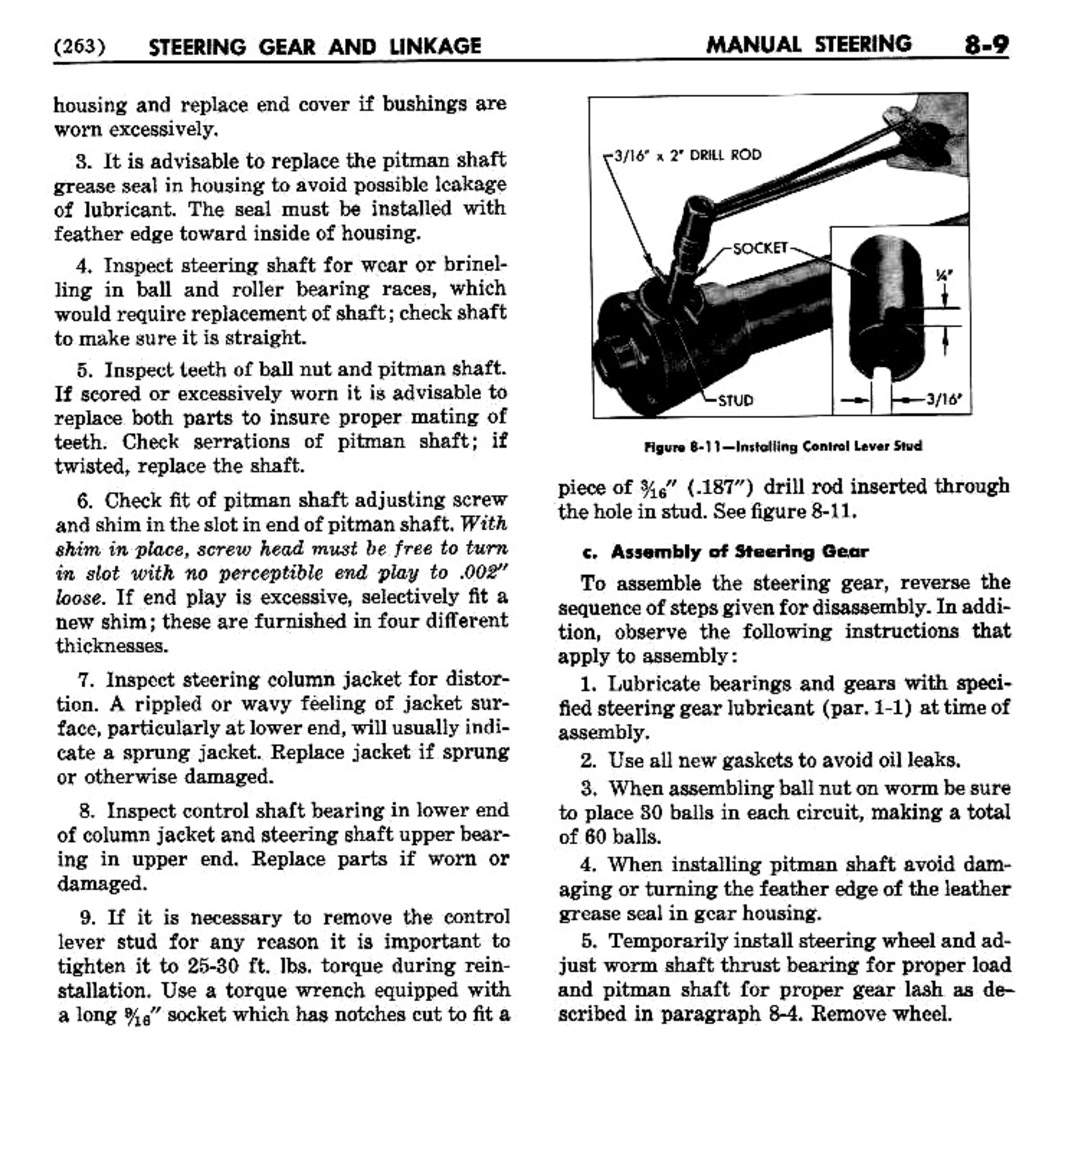 n_09 1954 Buick Shop Manual - Steering-009-009.jpg